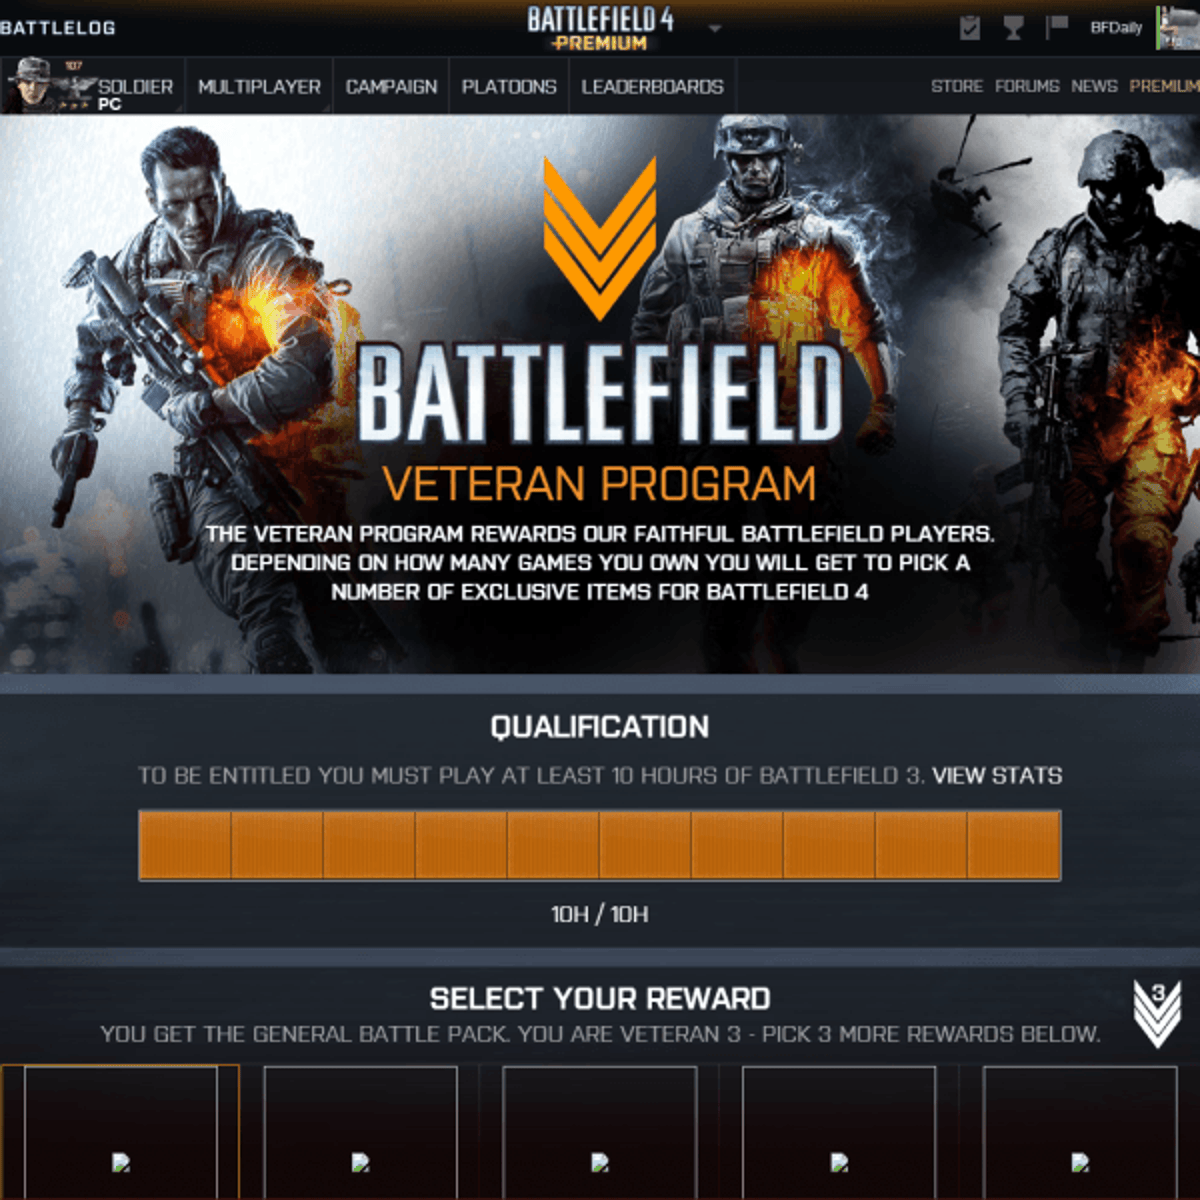 Play 10 hours of Battlefield 3, earn rewards in Battlefield 4's new Veteran  program